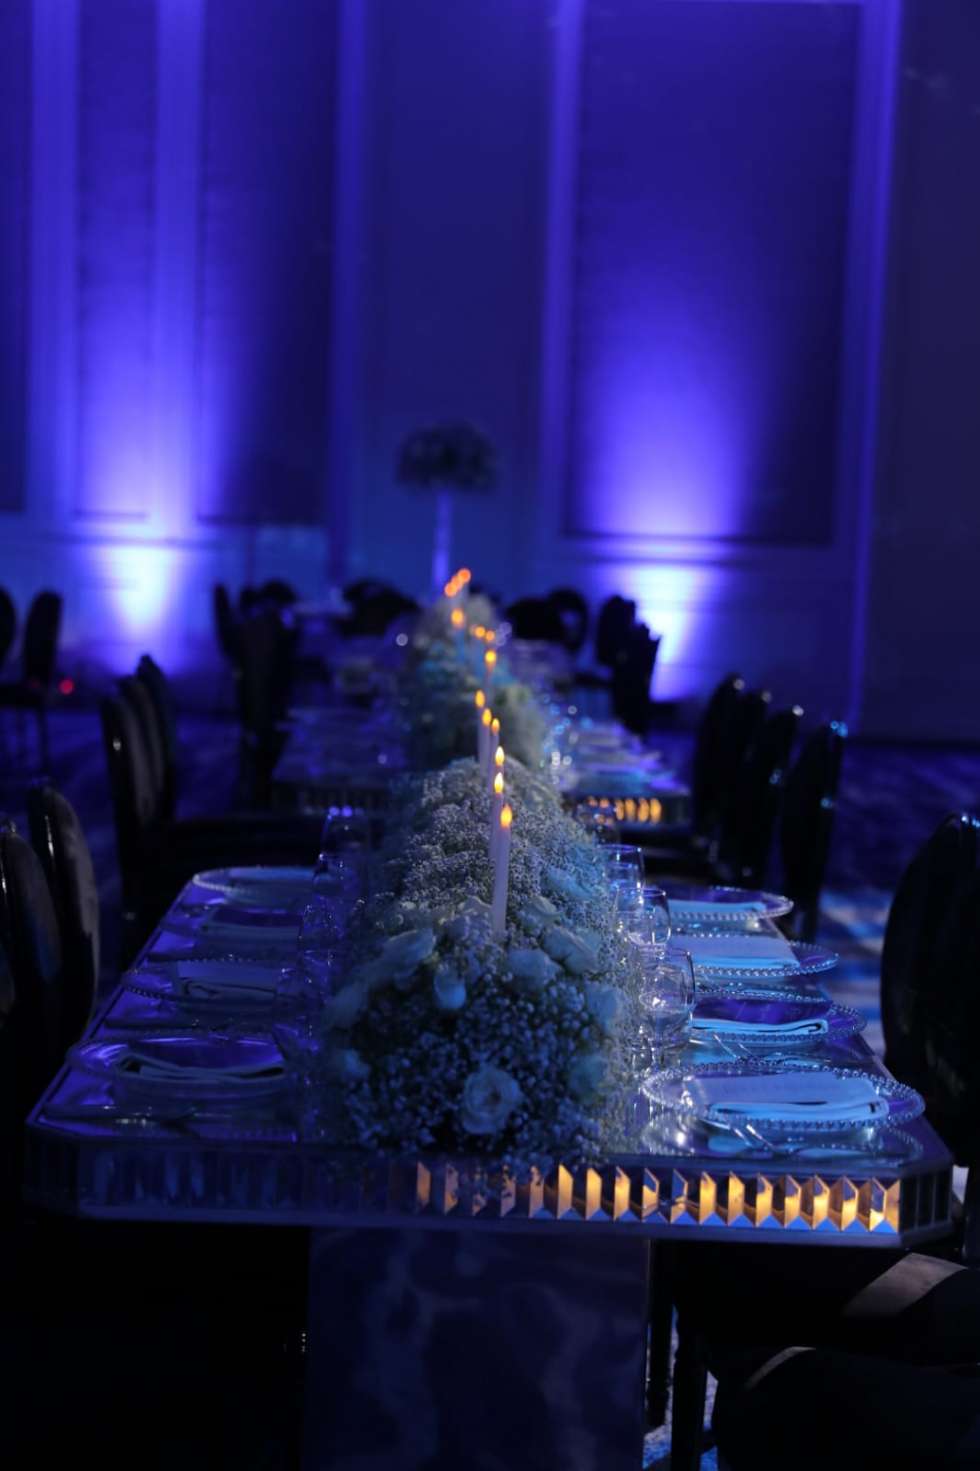 حفل زفاف ساحر من وحي جمال منتصف الليل في عمَان